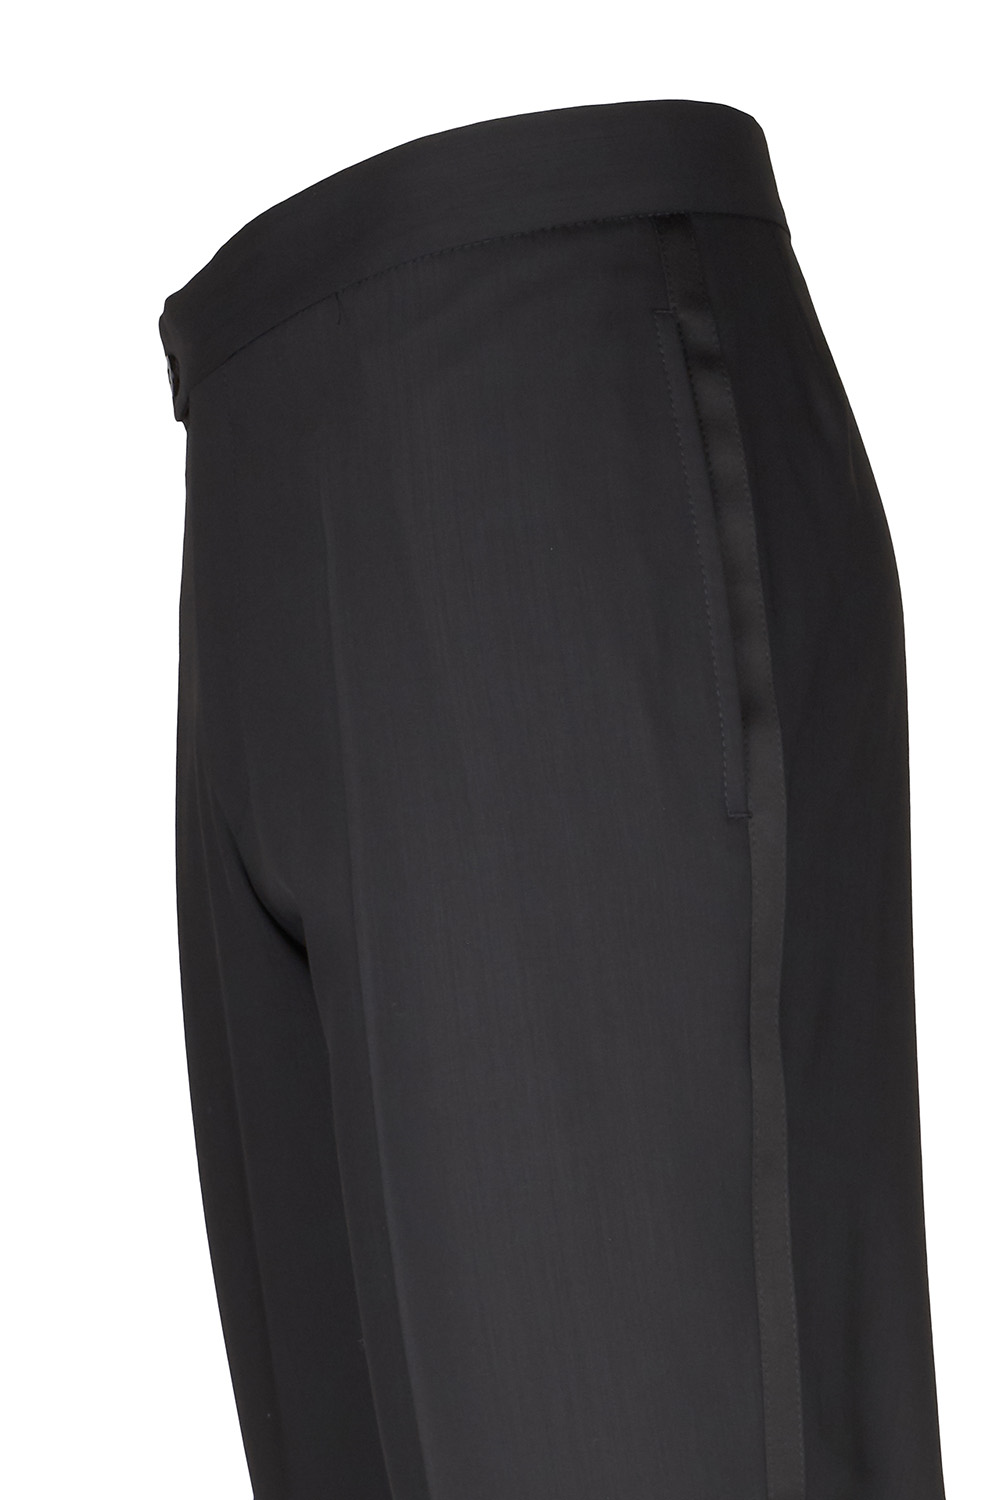 WILVORST fekete szmoking nadrág részletek 401201-1 Modell 622